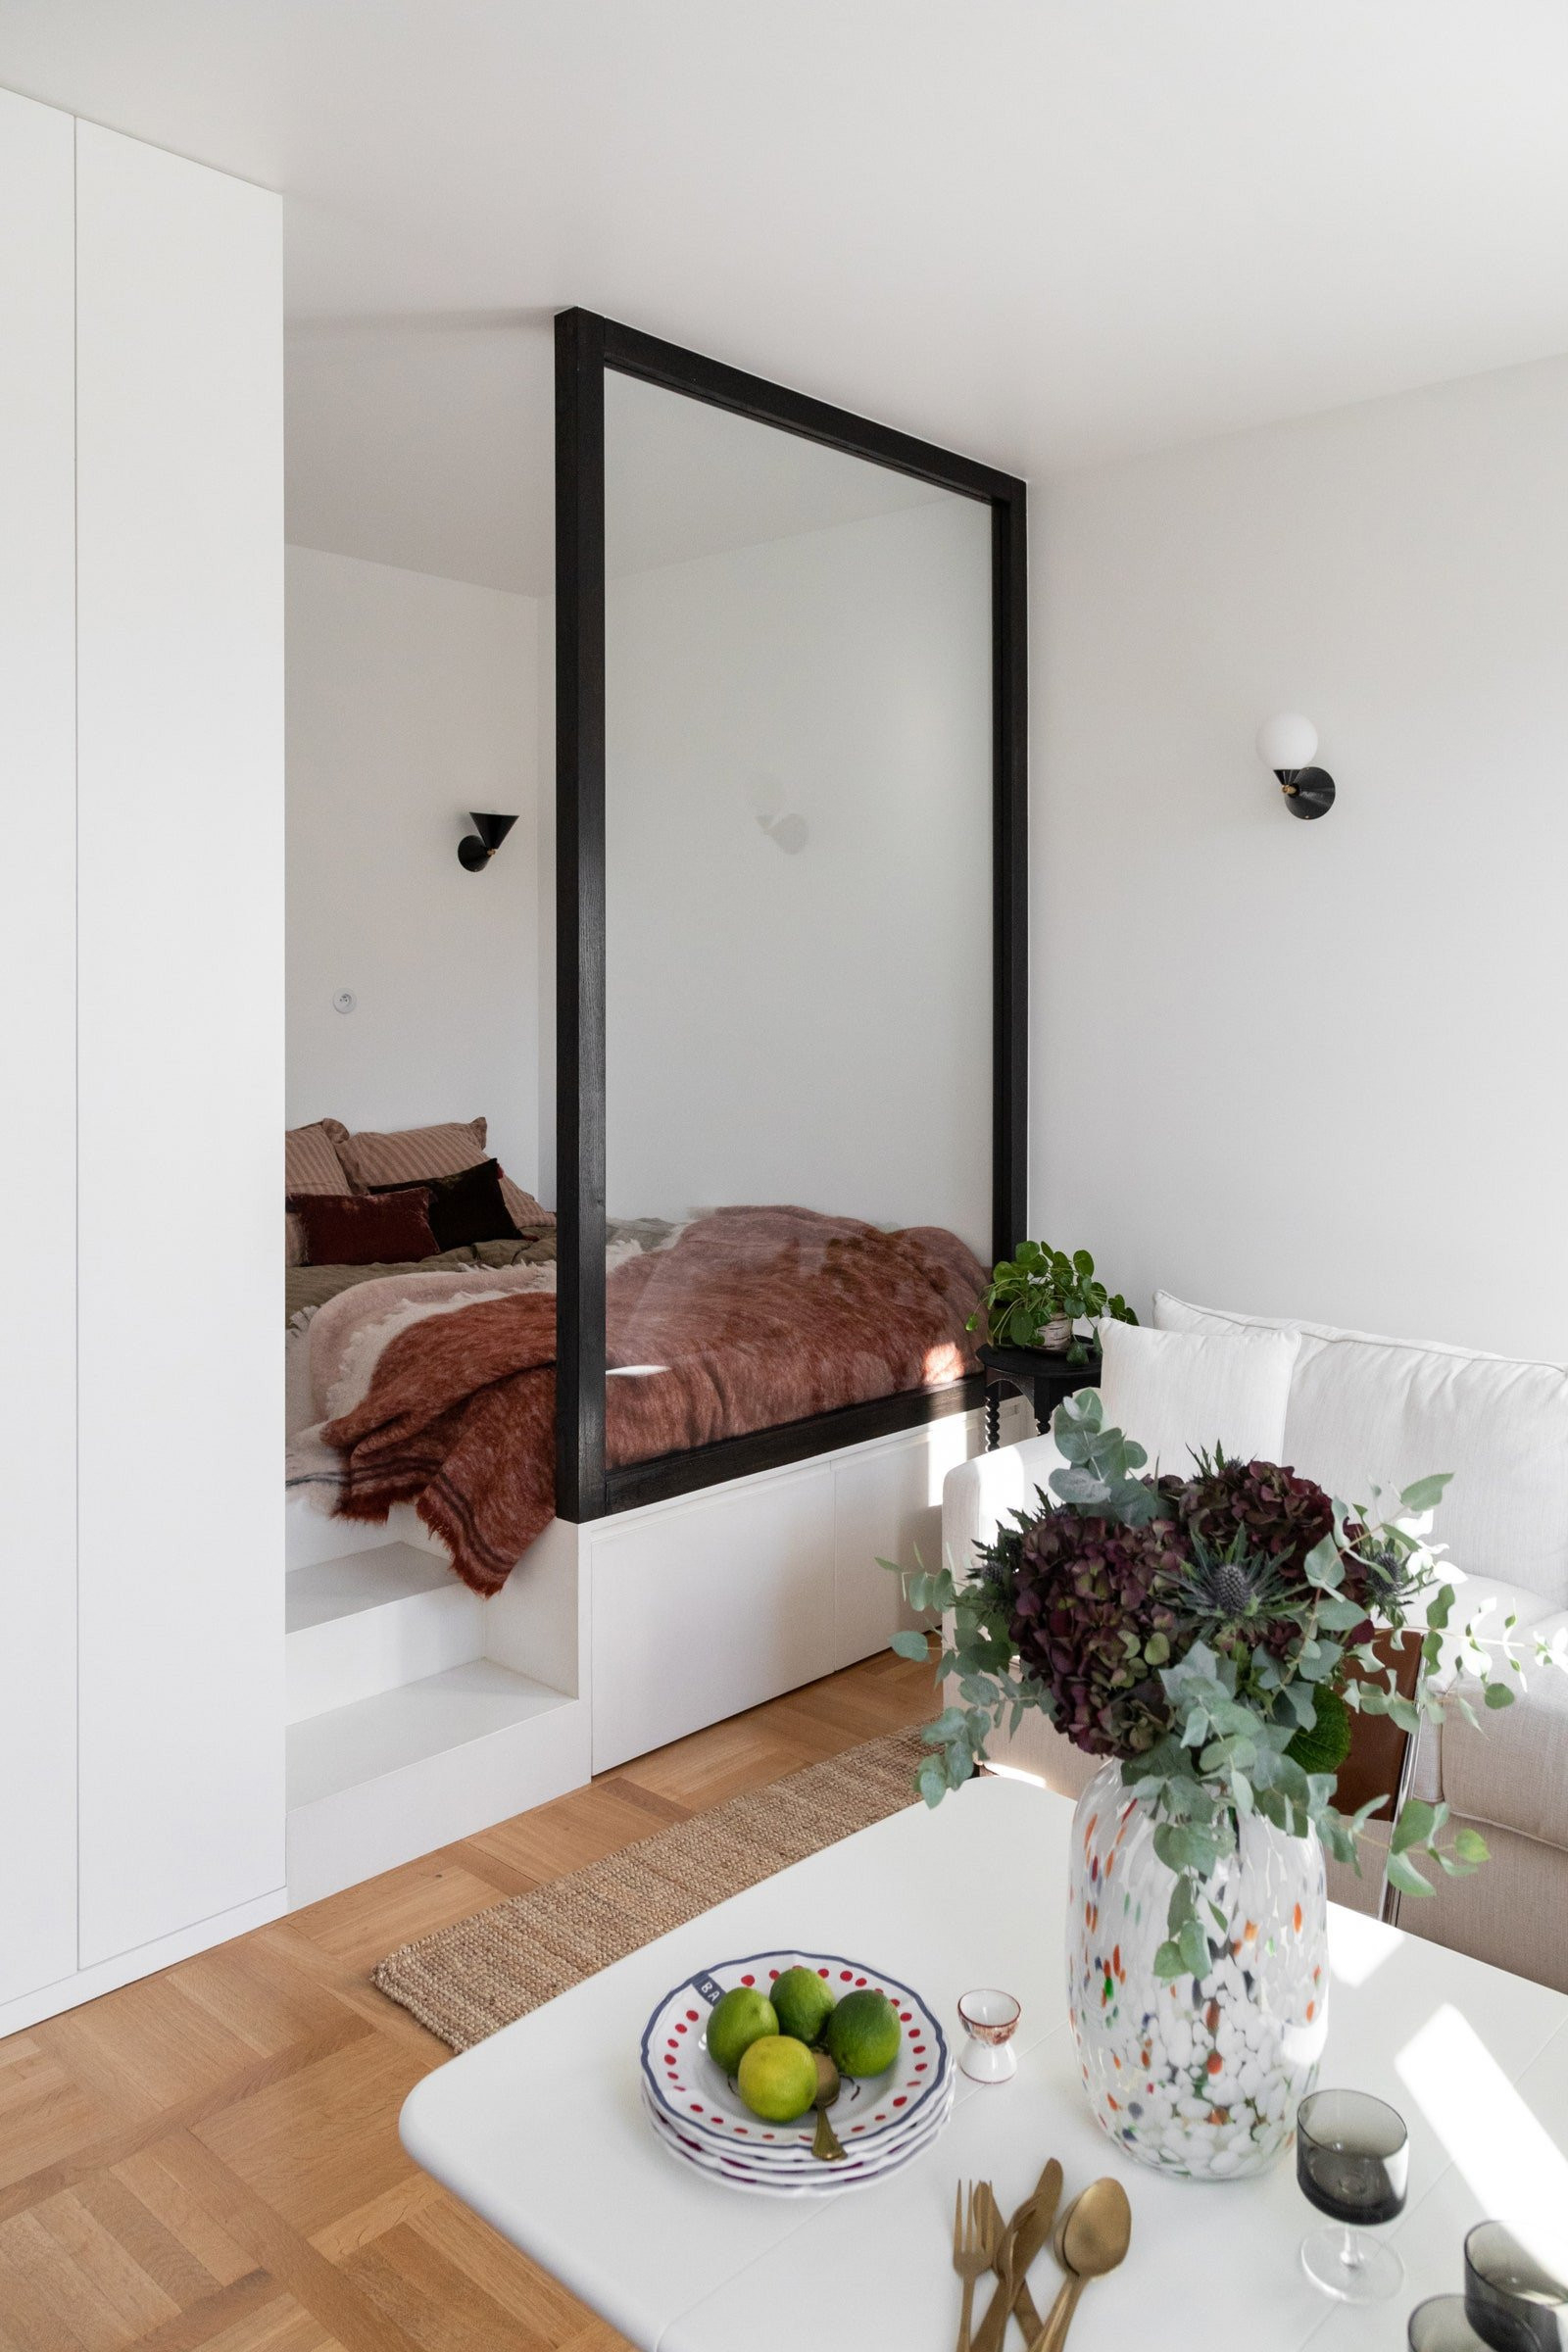 Bett Im Wohnzimmer Verstecken - Eine Clevere Lösung Für Mehr Platz throughout Bett Im Wohnzimmer Verstecken